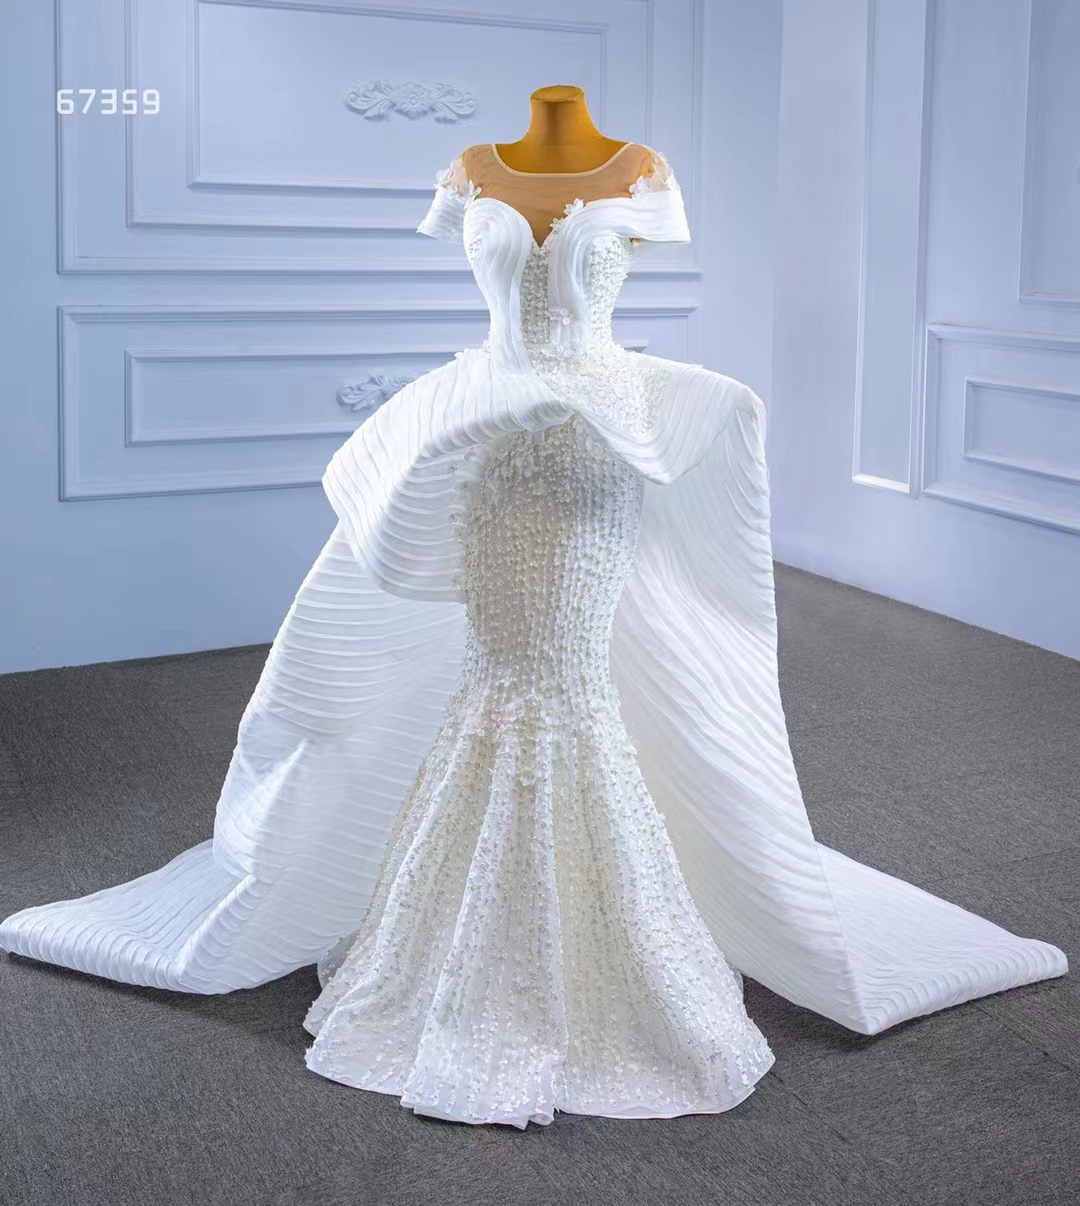 Sweetheart trouwjurk trendontwerp luxe zware kralen kant wit SM67359